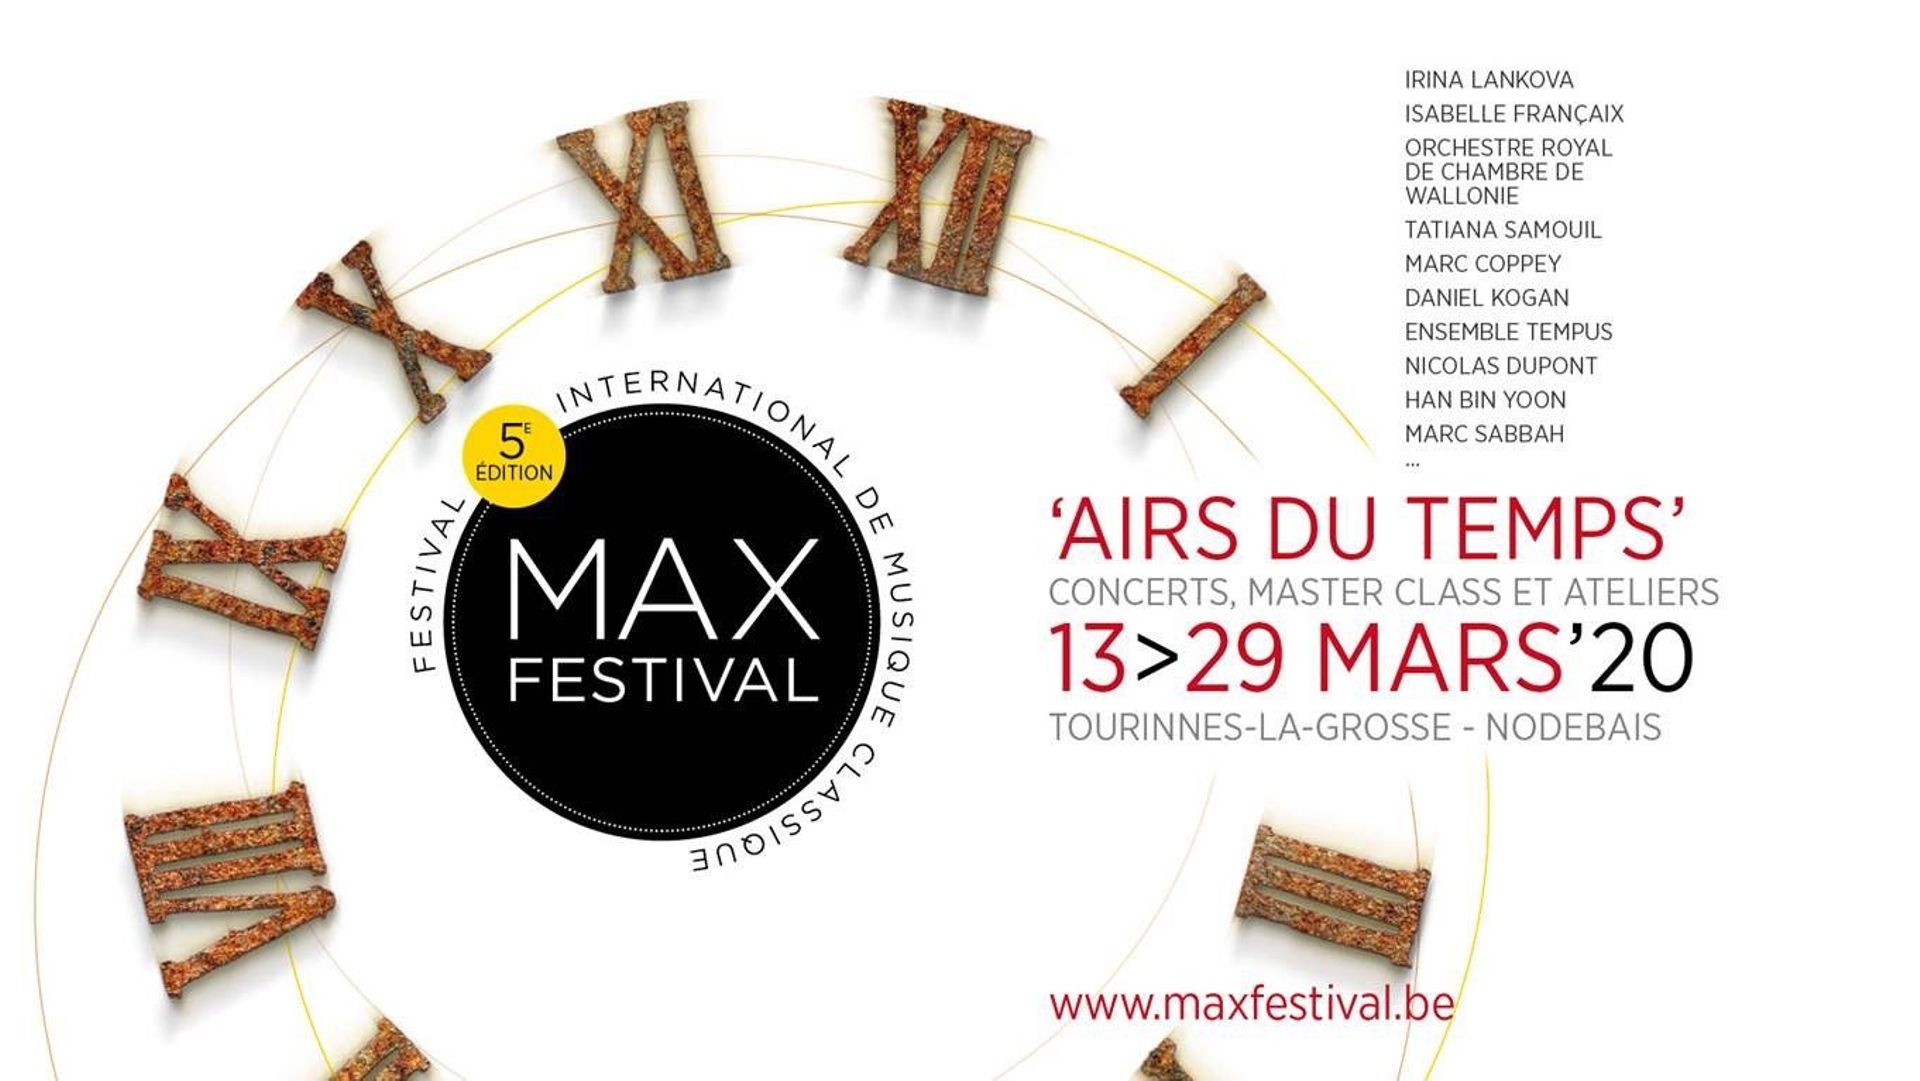 Le Max Festival a lieu du 13 au 29 mars 2020